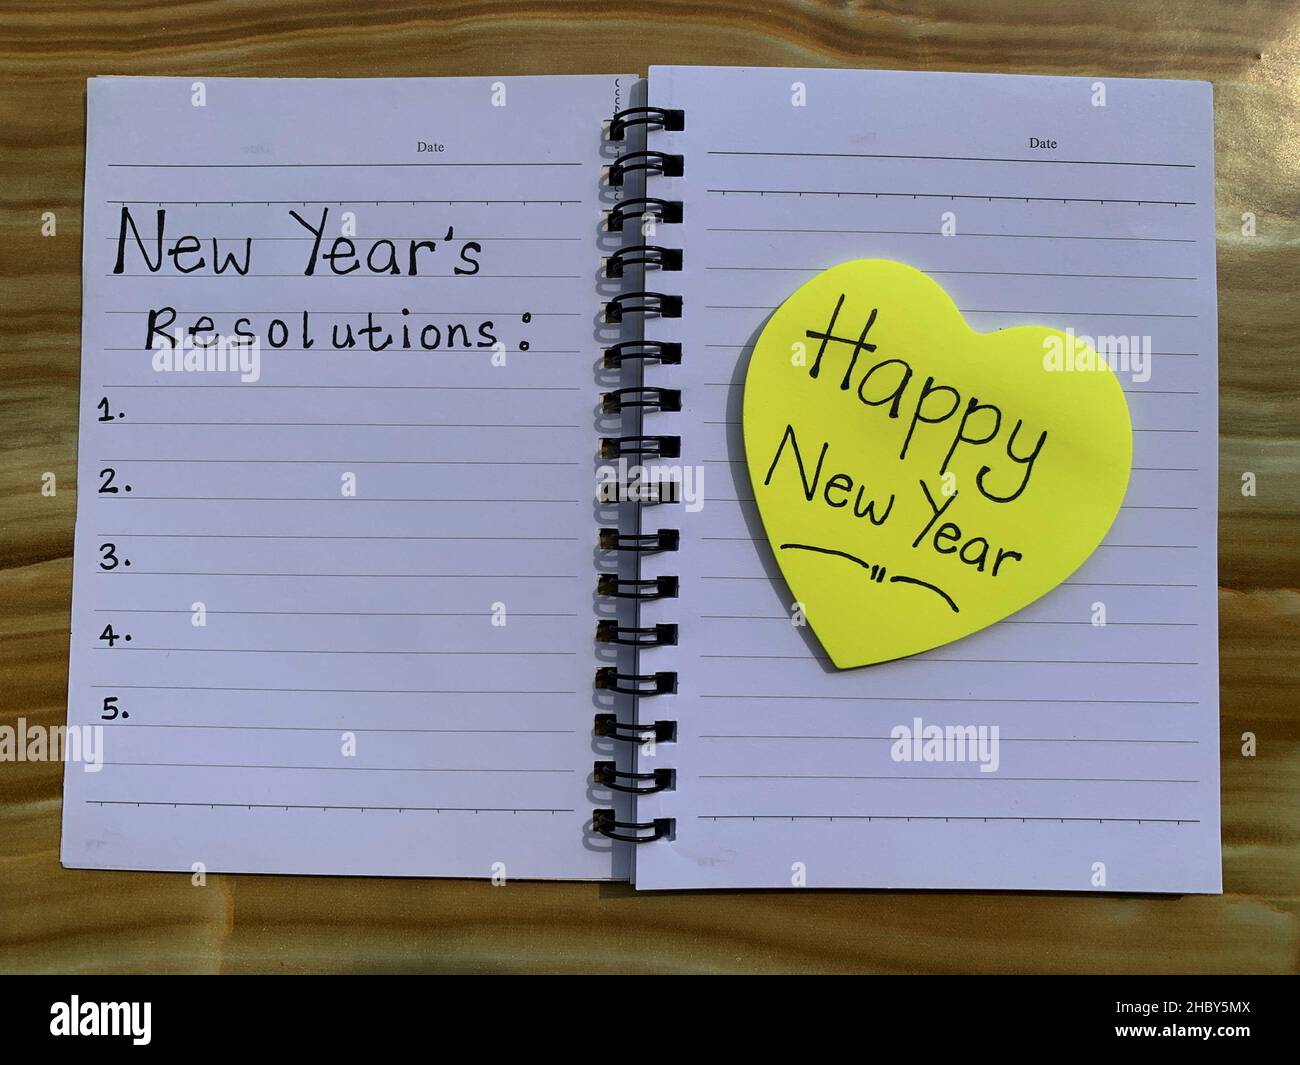 Schöne Wünsche auf Haftnotizen mit einem auf einem Notizblock geschriebenen Vorsatz für das neue Jahr. Stockfoto